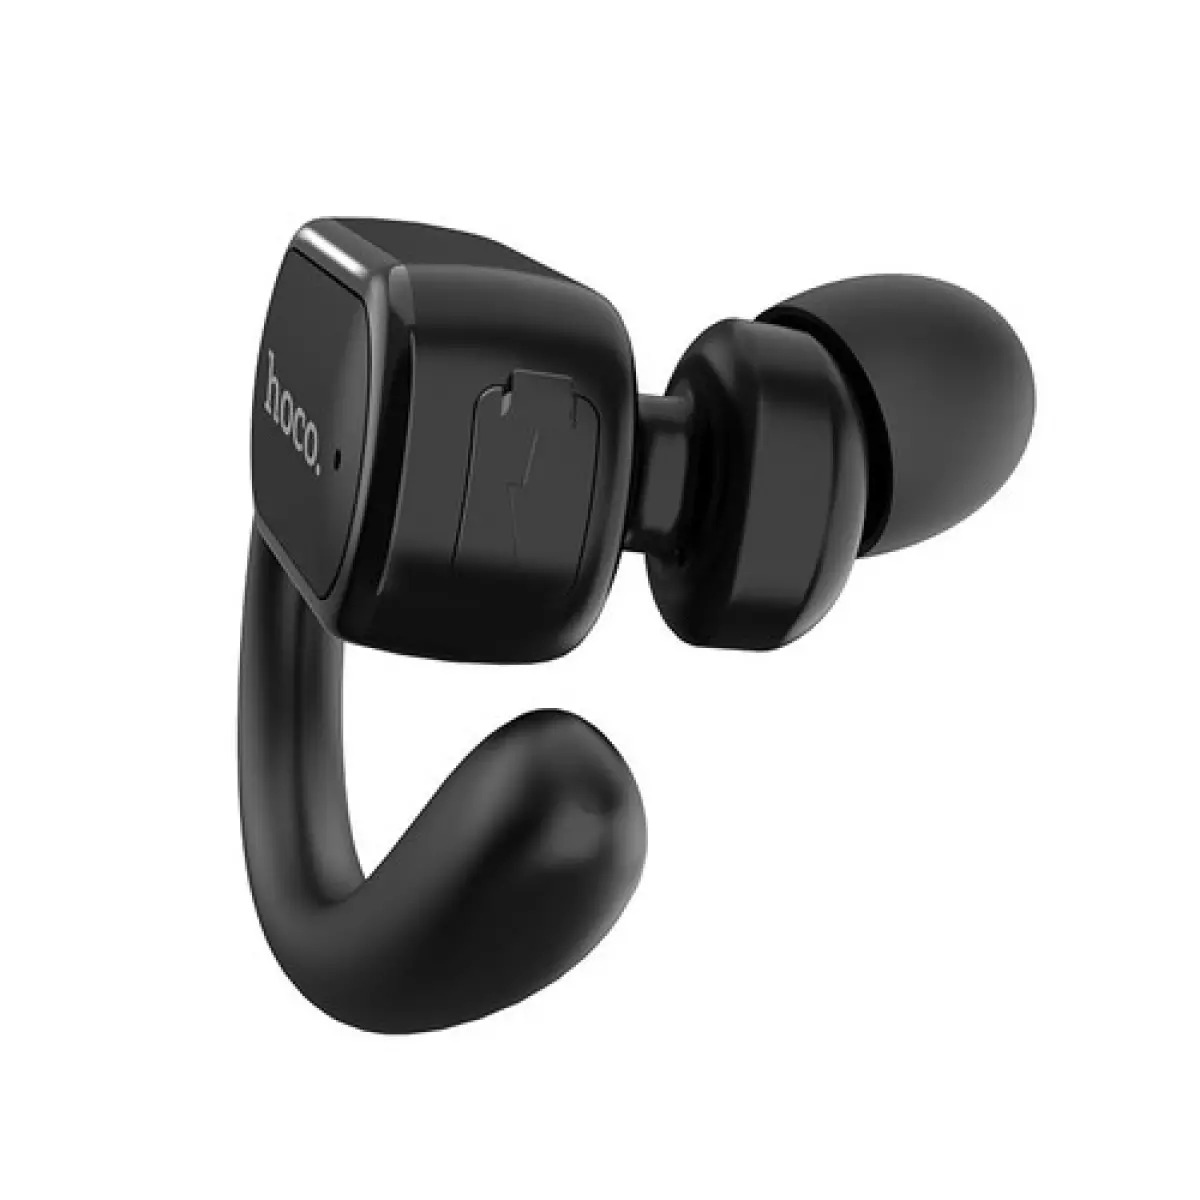 Tai nghe Bluetooth V5.0 Hoco E26 Plus pin 50mAh cho âm thanh sống động - Hàng chính hãng